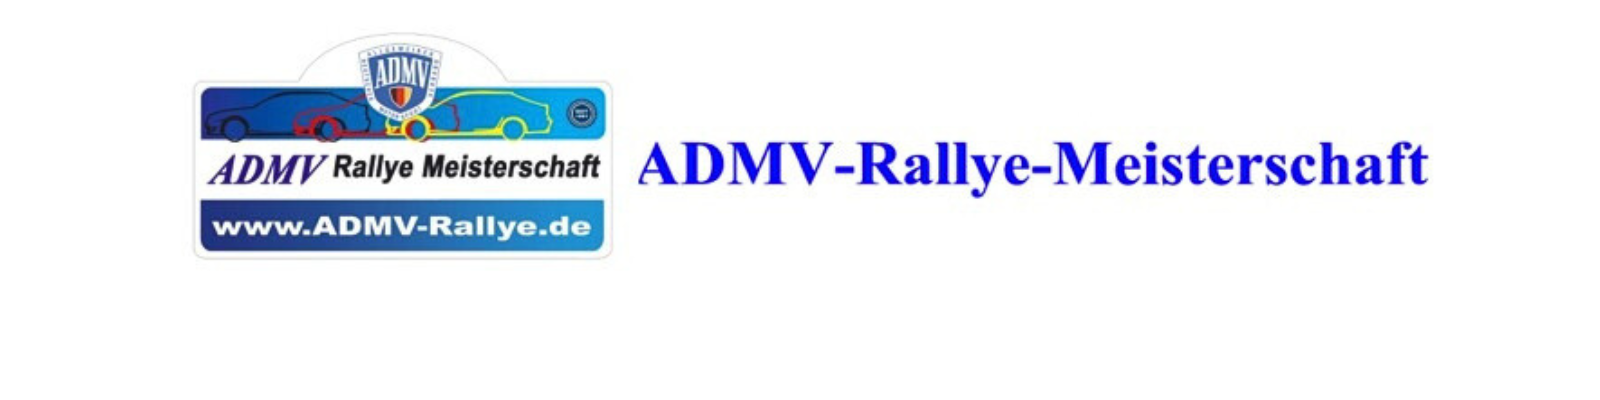 ADMV ARM Einleitungsbild